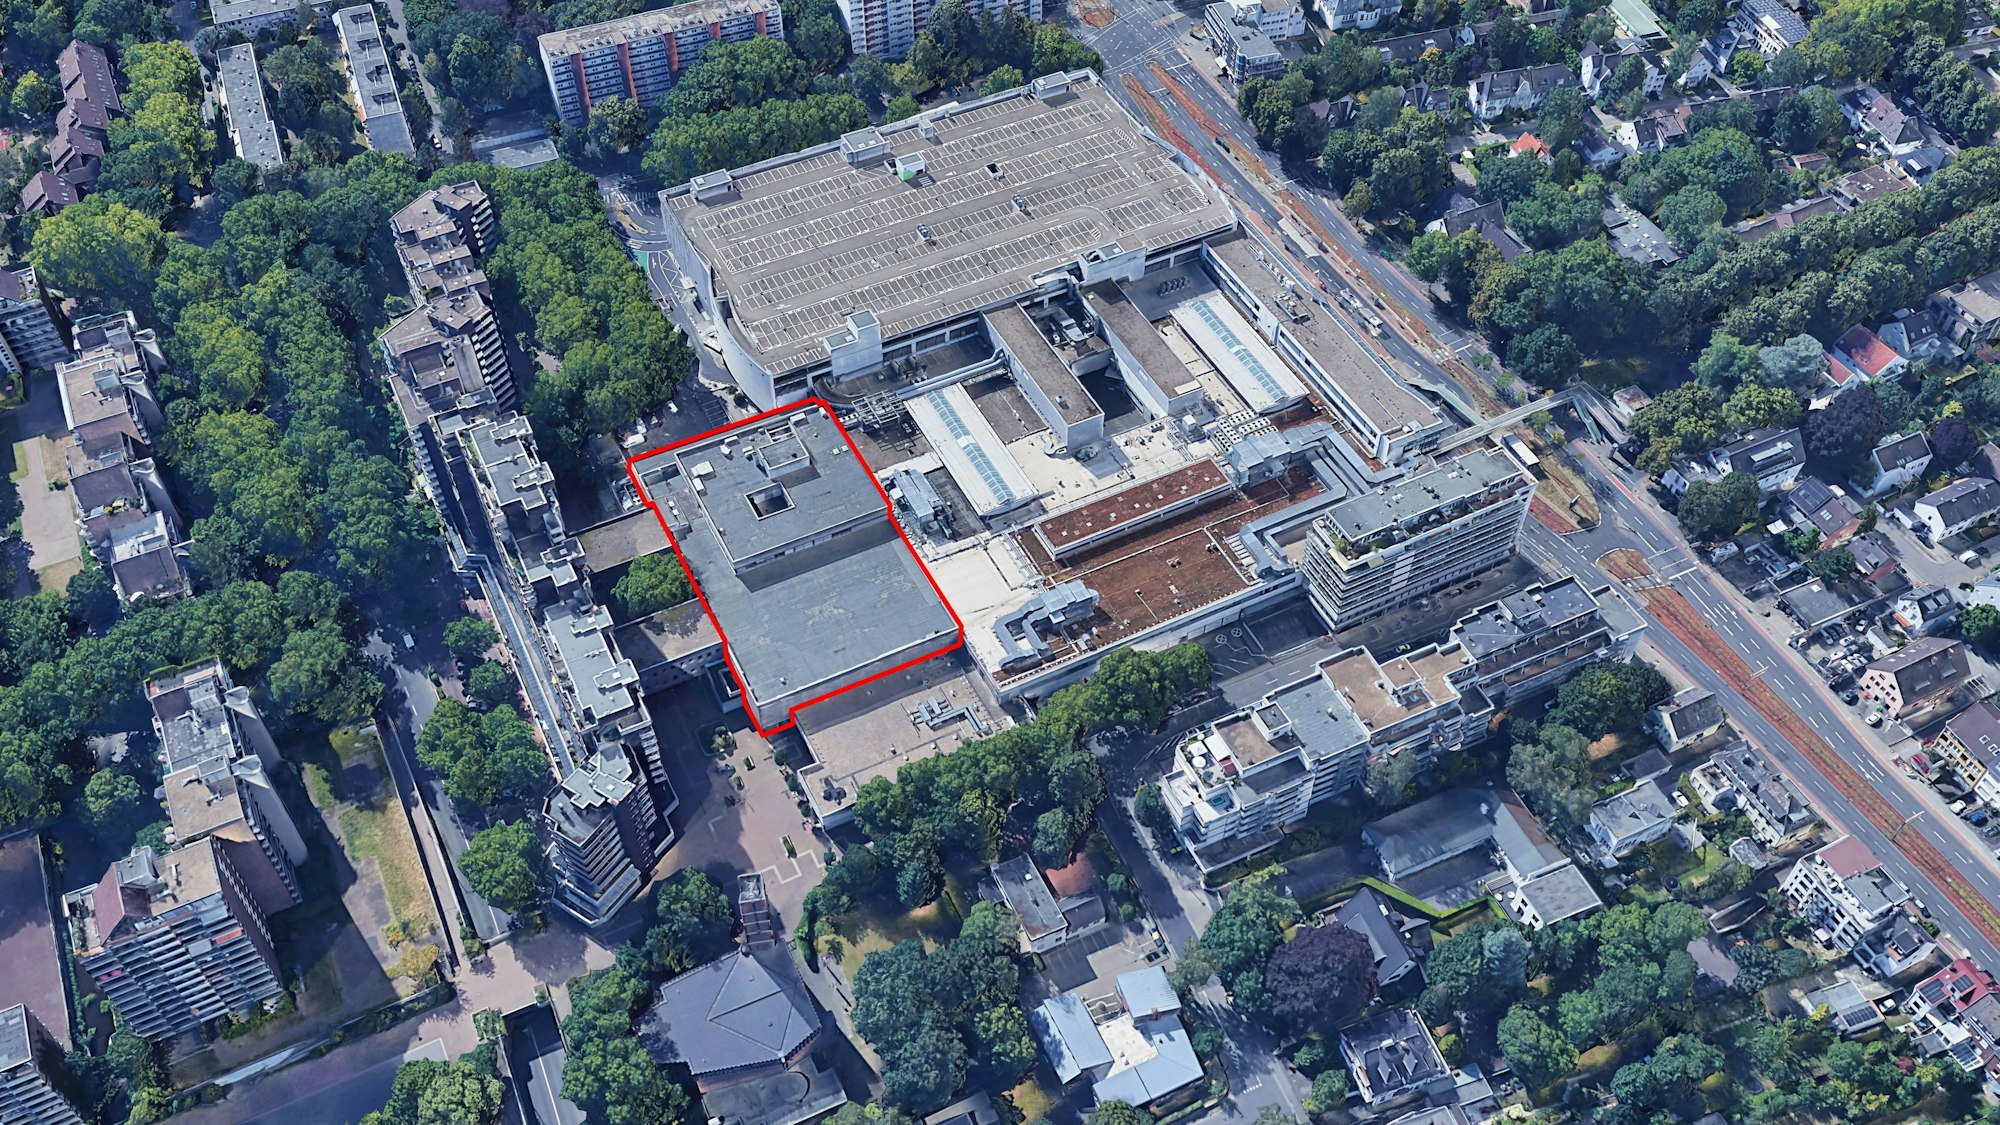 Das Einkaufszentrum Rhein-Center in Weiden an der Aachener Straße (rechts im Bild). Ein eigenständiger Gebäudeteil des Komplexes (rot hervorgehoben), in dem früher das Warenhaus Kaufhof beheimatet war, hat nun den Besitzer gewechselt.